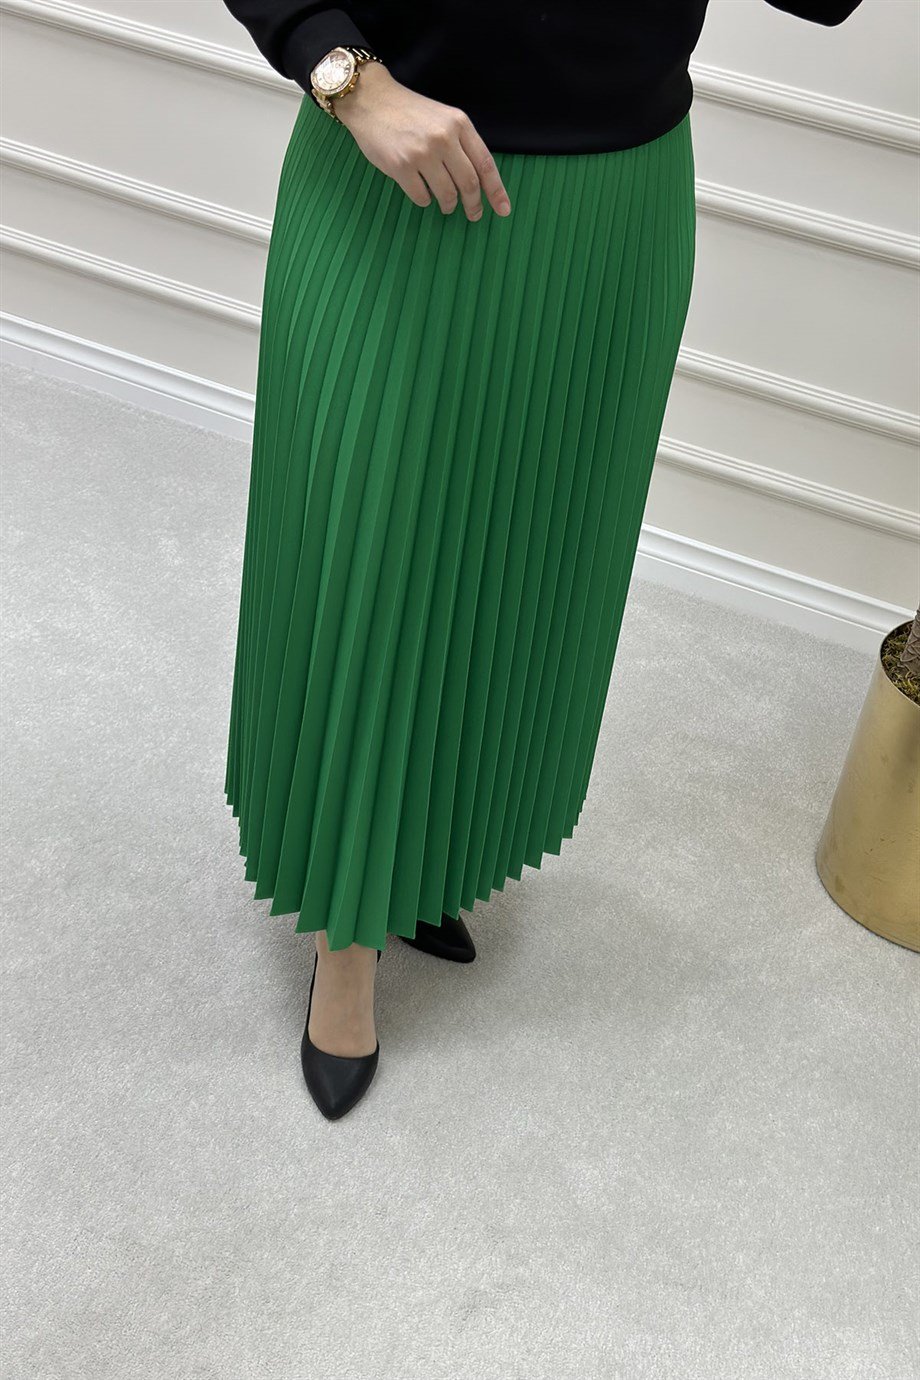 Piliseli Kadın Benetton Yeşili Etek 1426 - Elören Giyim